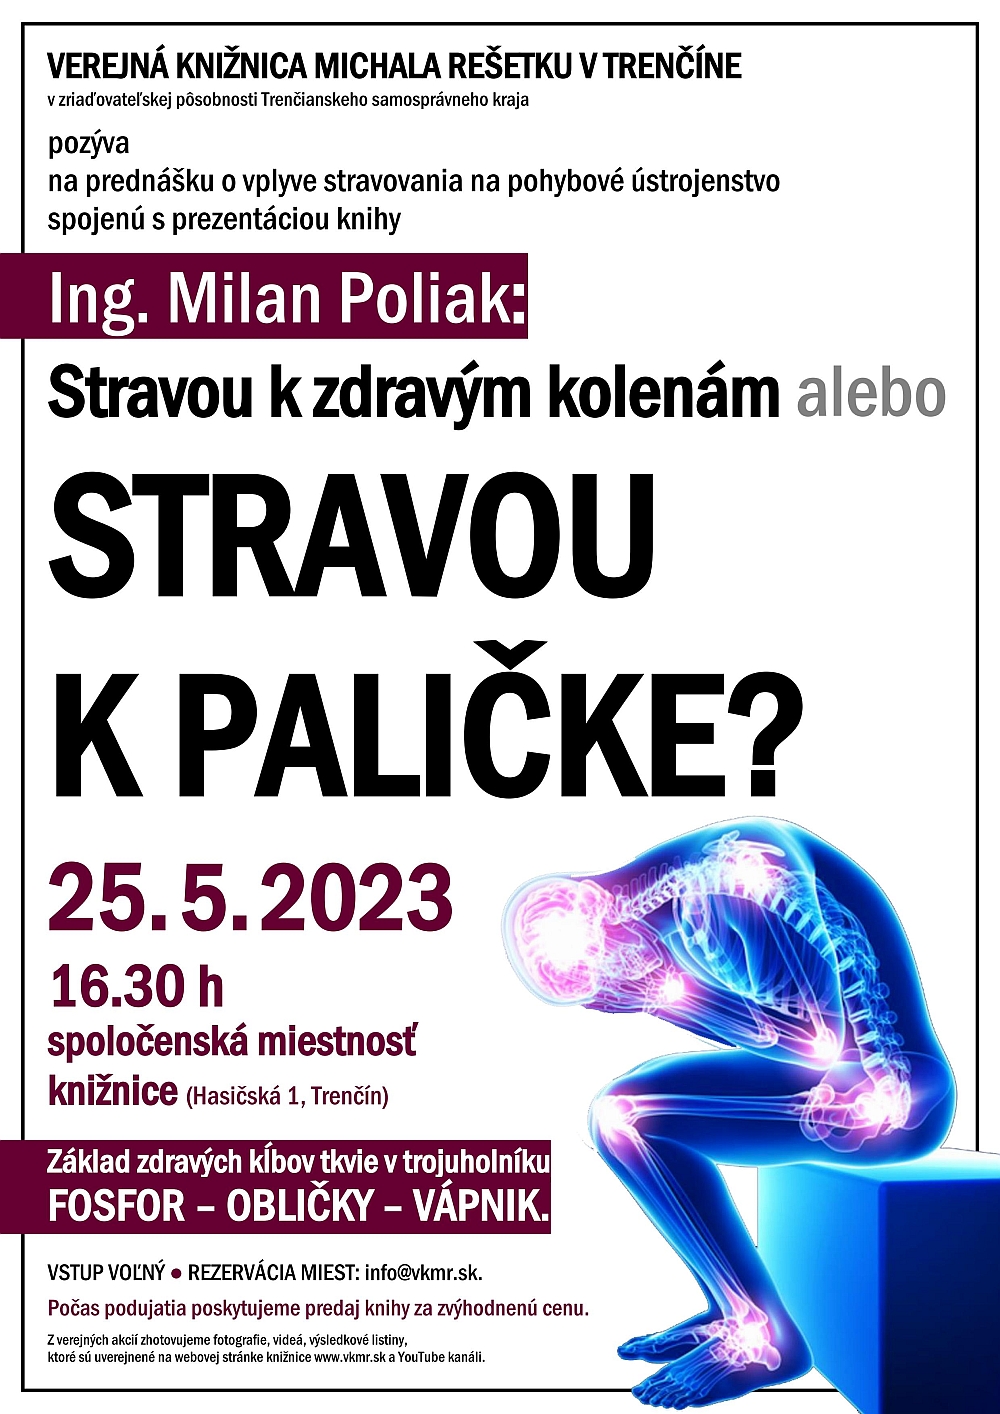 Milan Poliak: Stravou k paličke?